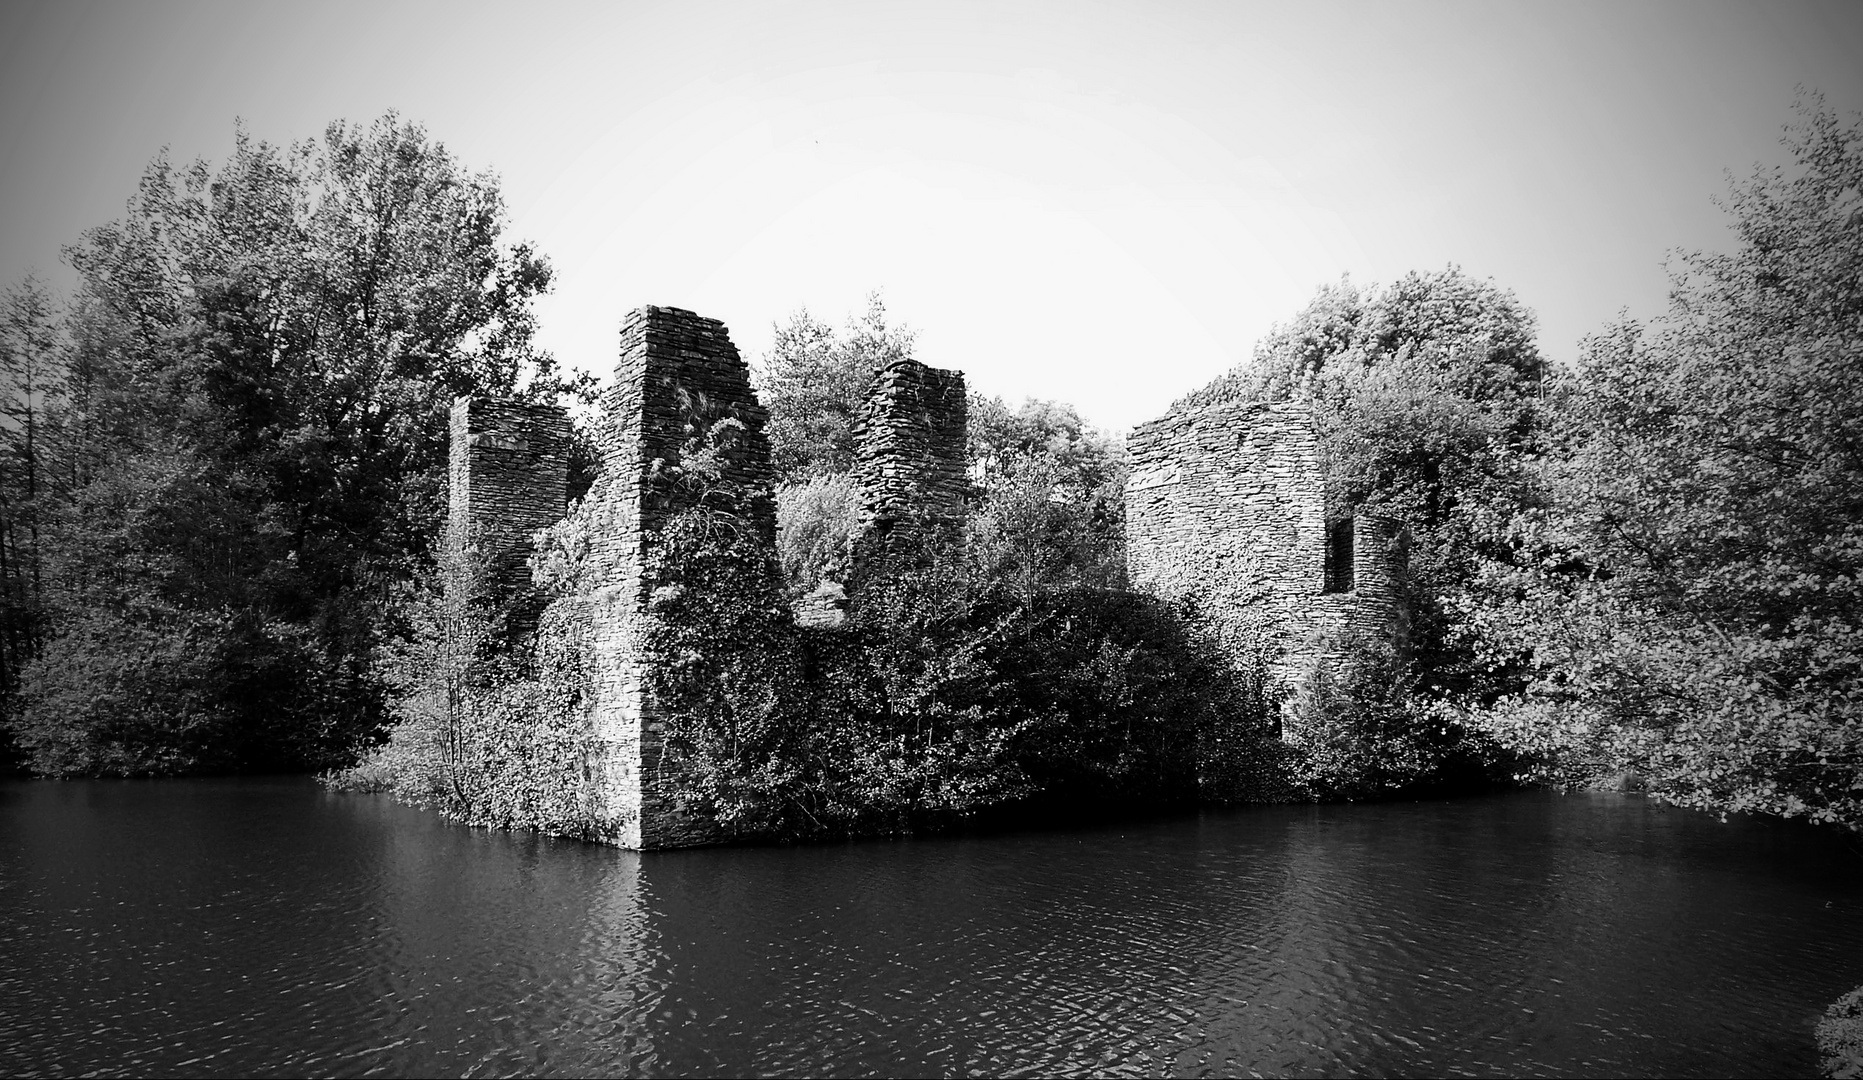 Burg Ruine 